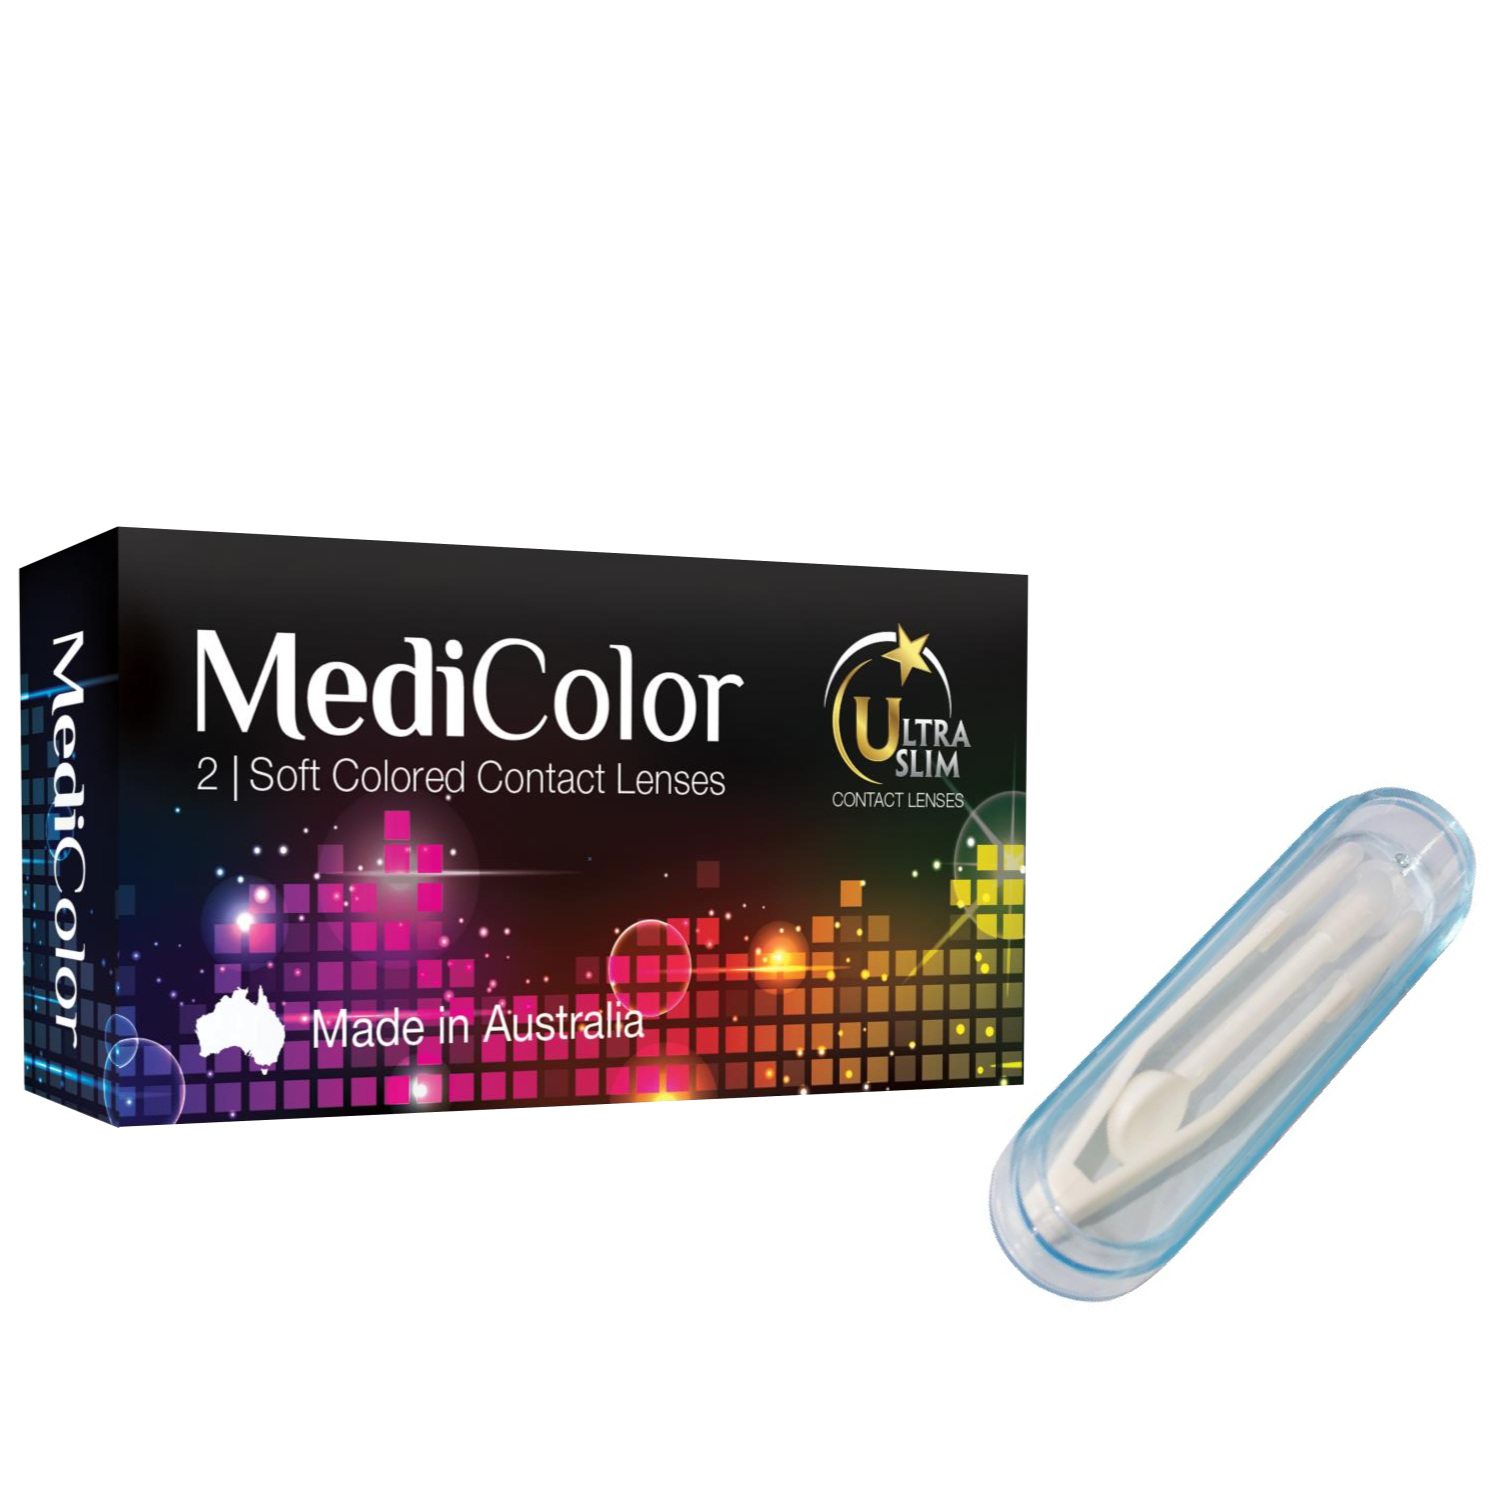 [Một Cặp] Kính Áp Tròng Australia Màu Nâu Medicolor 3 tháng – Lens Màu Nâu (Choco) + Nhíp Đeo Lens